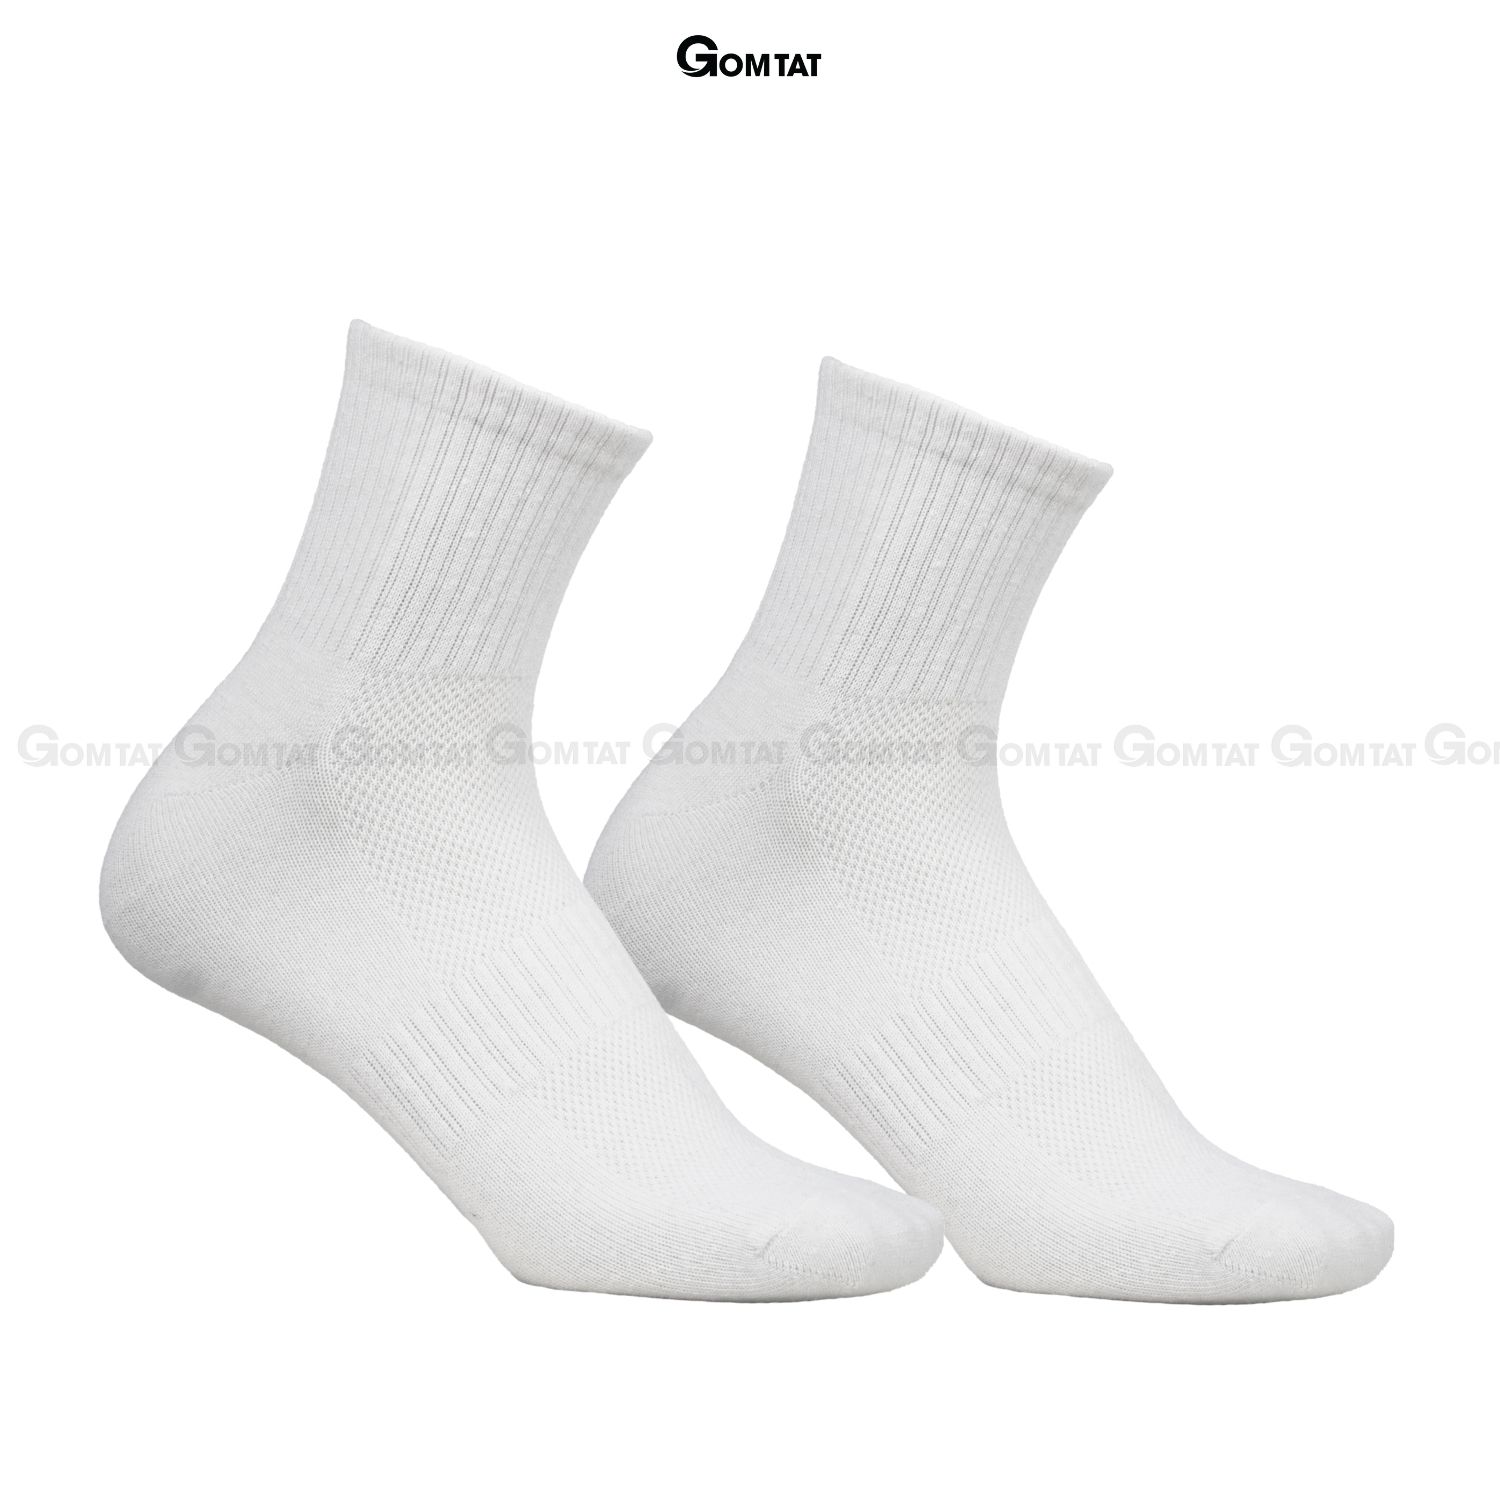 Combo 10 đôi tất vớ nam nữ cổ trung trơn màu GOMTAT chất liệu cotton cao cấp, thiết kế thoáng khí -GOM-KLB-TRONLUNG-CB10